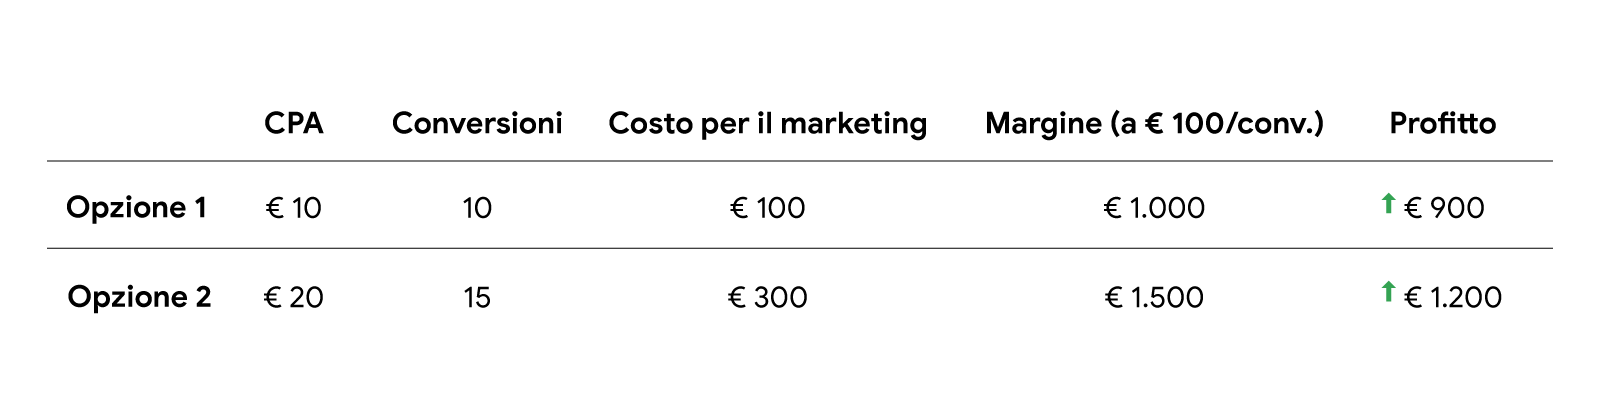 Una tabella che riporta due opzioni con la definizione di un costo per acquisizione target. Opzione 1: CPA di € 10, 10 conversioni, costo per il marketing di € 100, margine (a € 100 per conversione) di € 1000, profitto di € 900. Opzione 2: CPA di € 20, 15